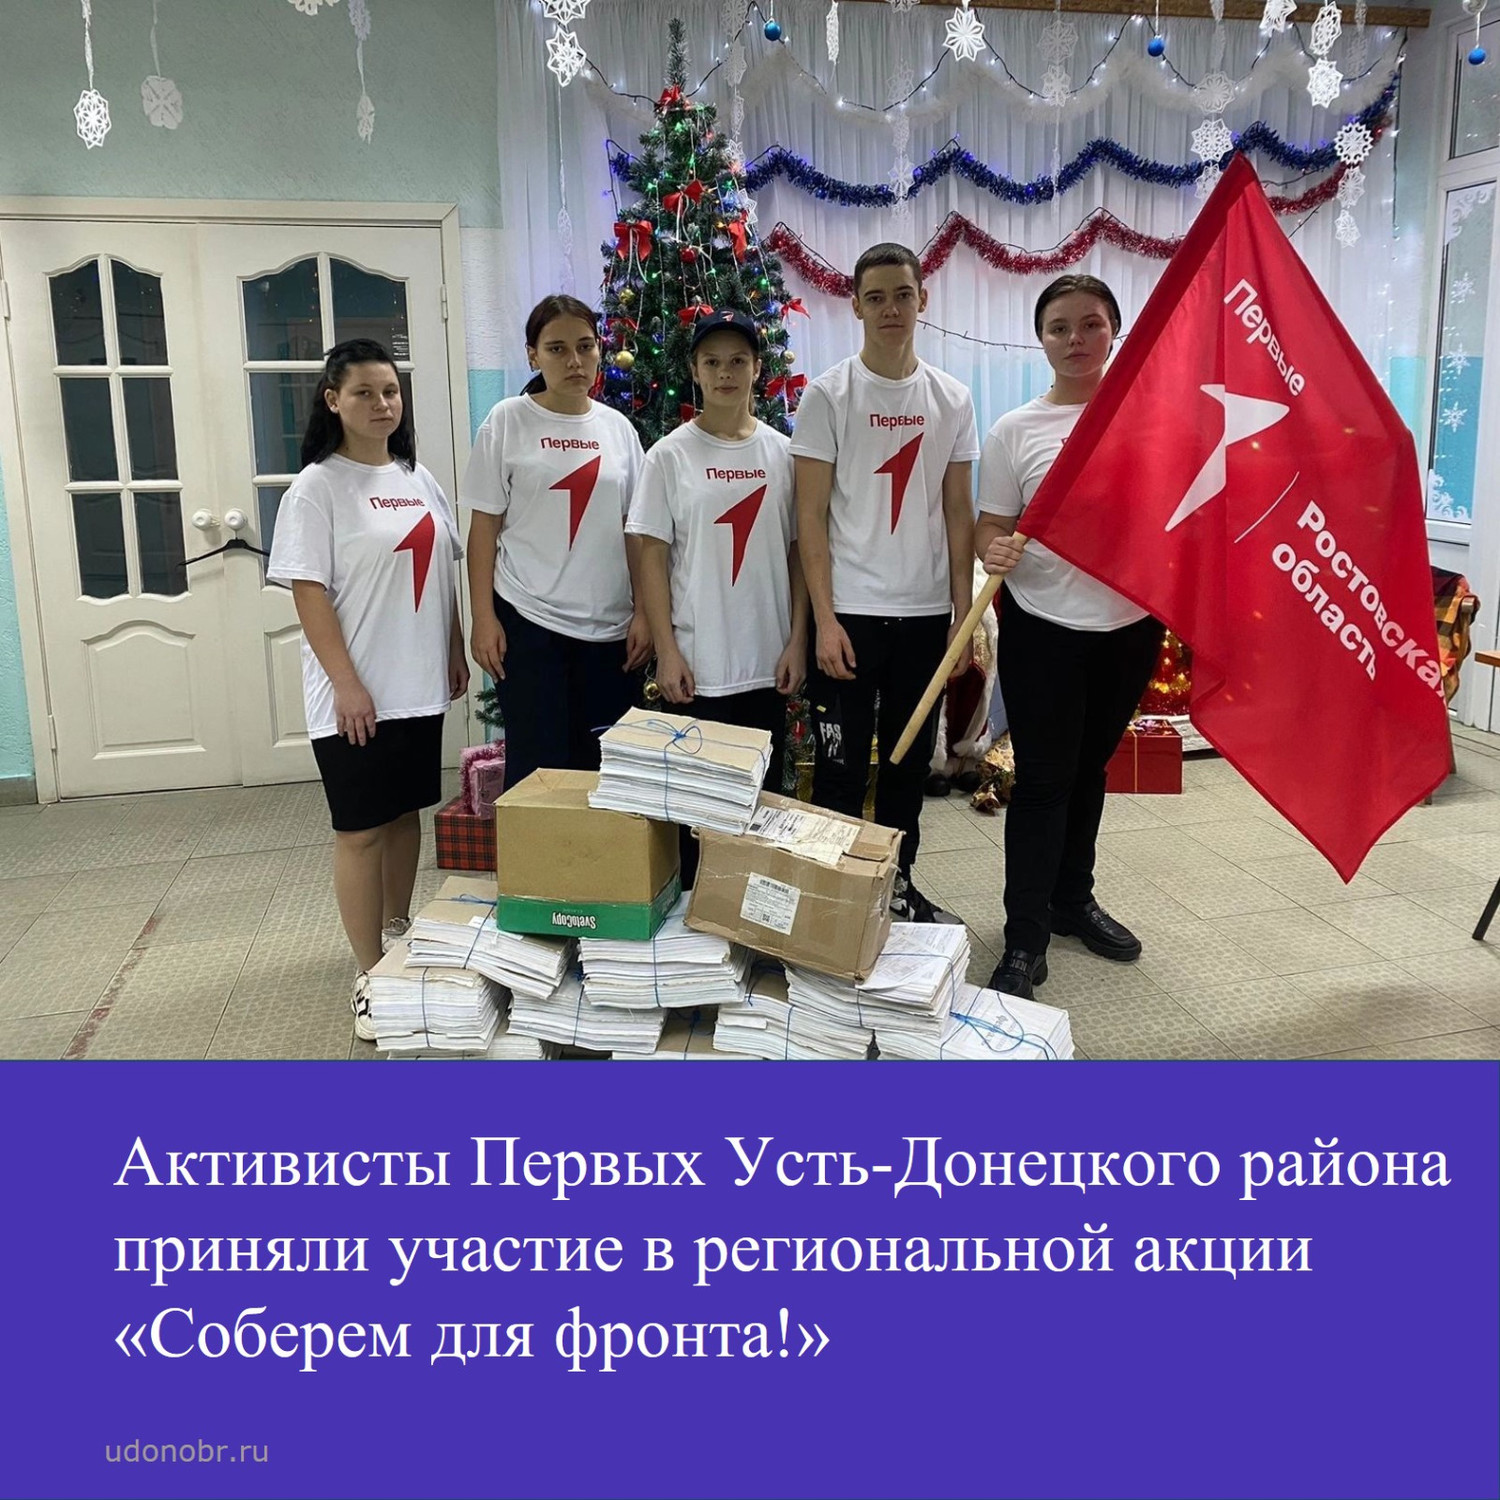 Активисты Первых Усть-Донецкой школы района приняли участие в региональной акции «Соберем для фронта!»